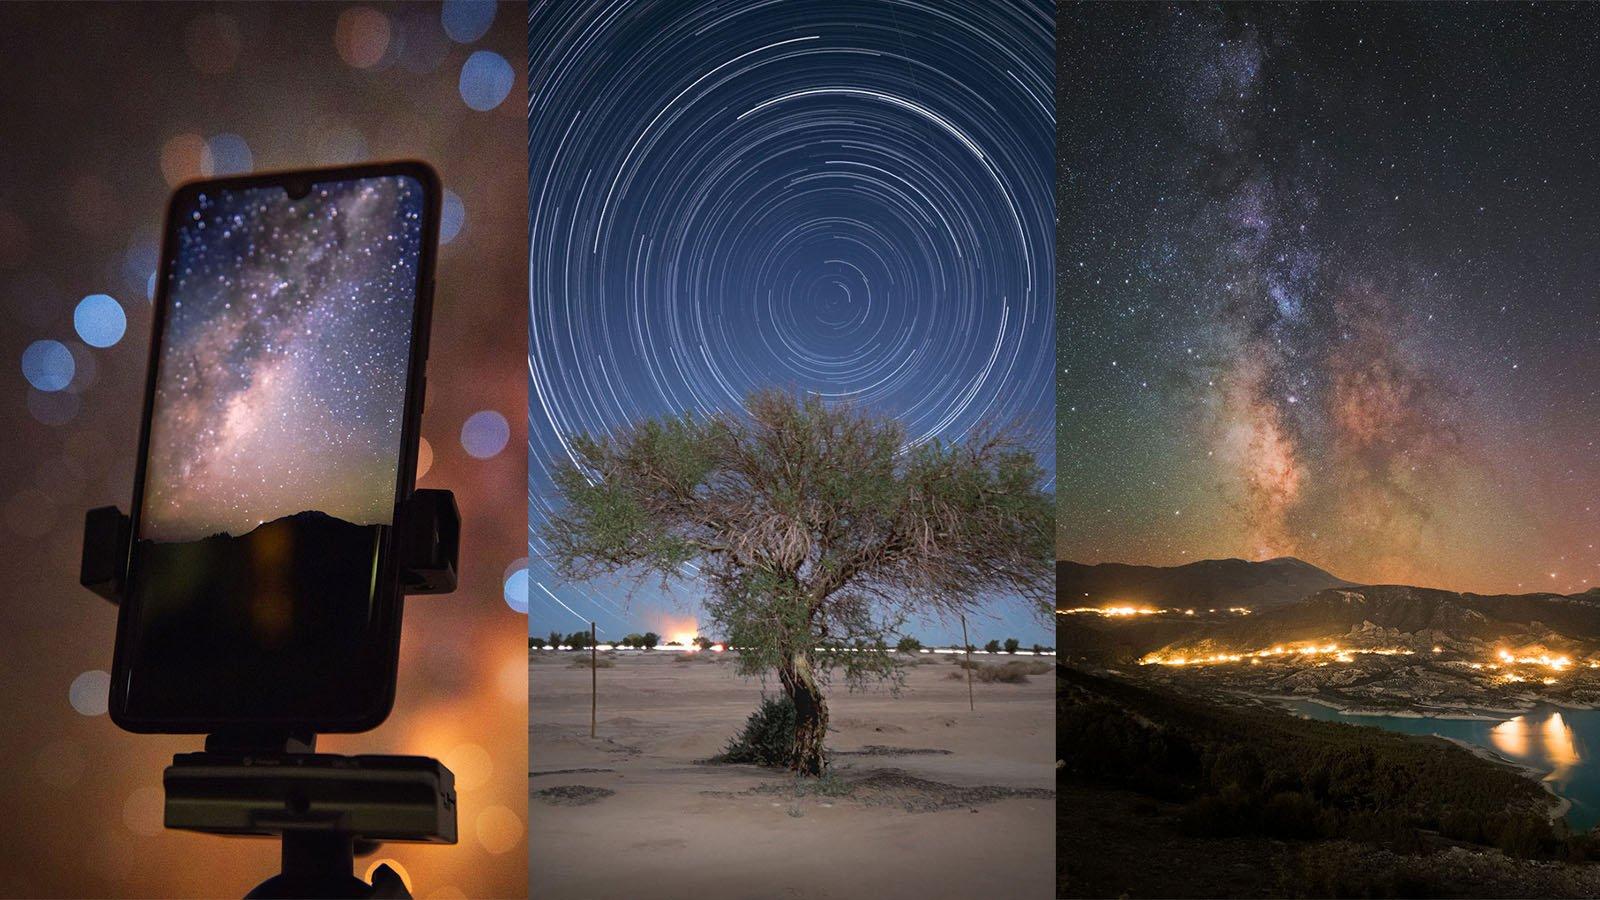 Hãy khám phá vẻ đẹp không gian vô tận trong đêm bằng cách chụp ảnh thiên văn trời đêm. Bạn sẽ được chiêm ngưỡng những vì sao lấp lánh và những cảnh tuyệt đẹp của bầu trời đêm. Hãy để chúng tôi dẫn bạn đến những điểm chụp ảnh tuyệt vời để bạn có thể lưu giữ những kỷ niệm đáng nhớ.